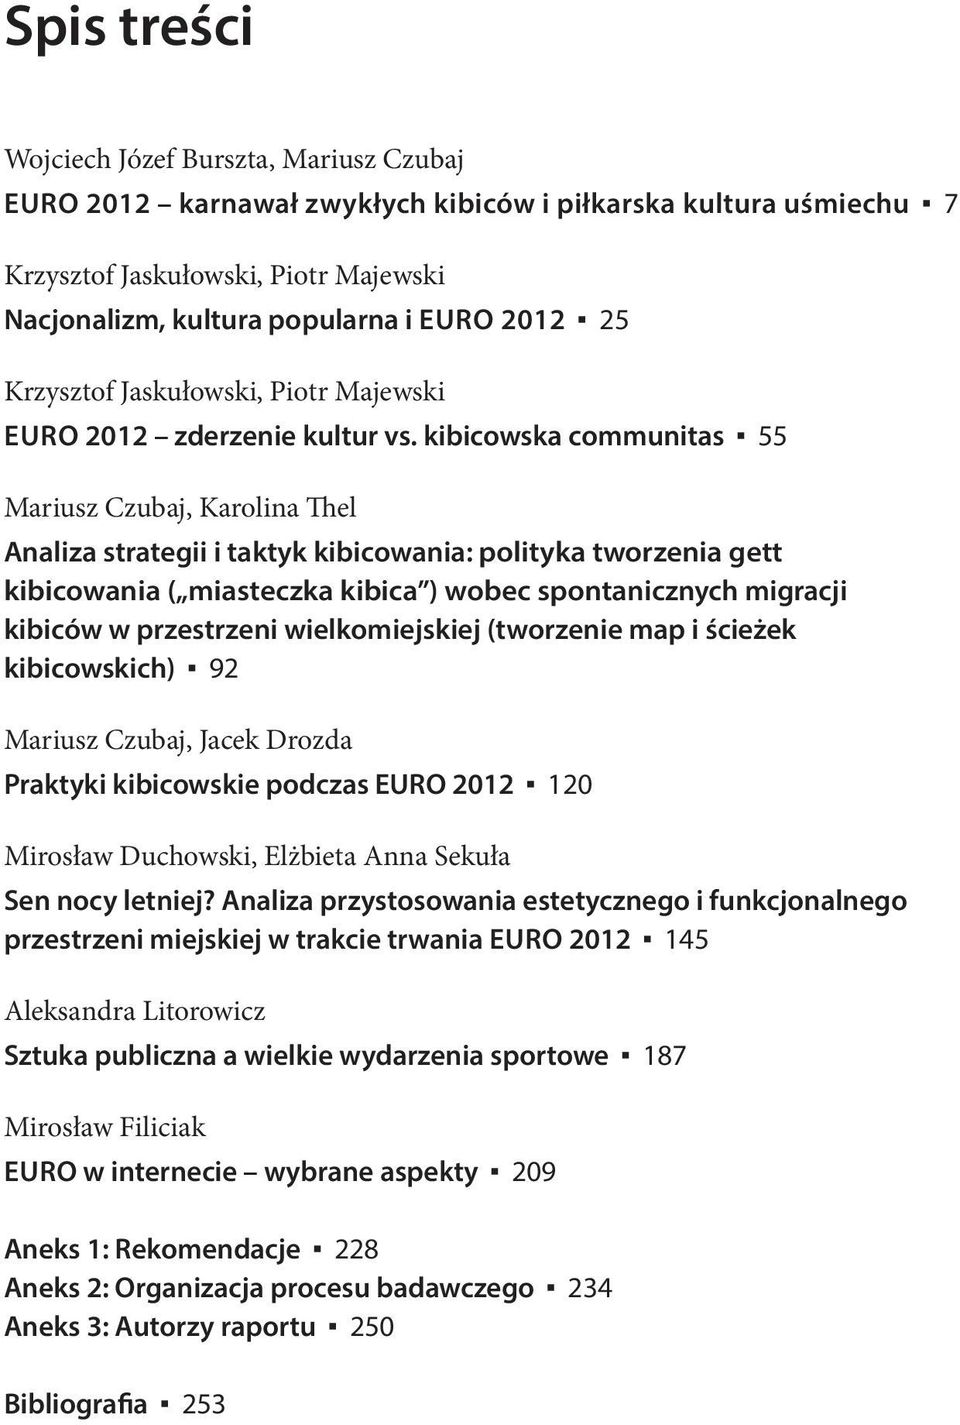 kibicowska communitas 55 Mariusz Czubaj, Karolina hel analiza strategii i taktyk kibicowania: polityka tworzenia gett kibicowania ( miasteczka kibica ) wobec spontanicznych migracji kibiców w